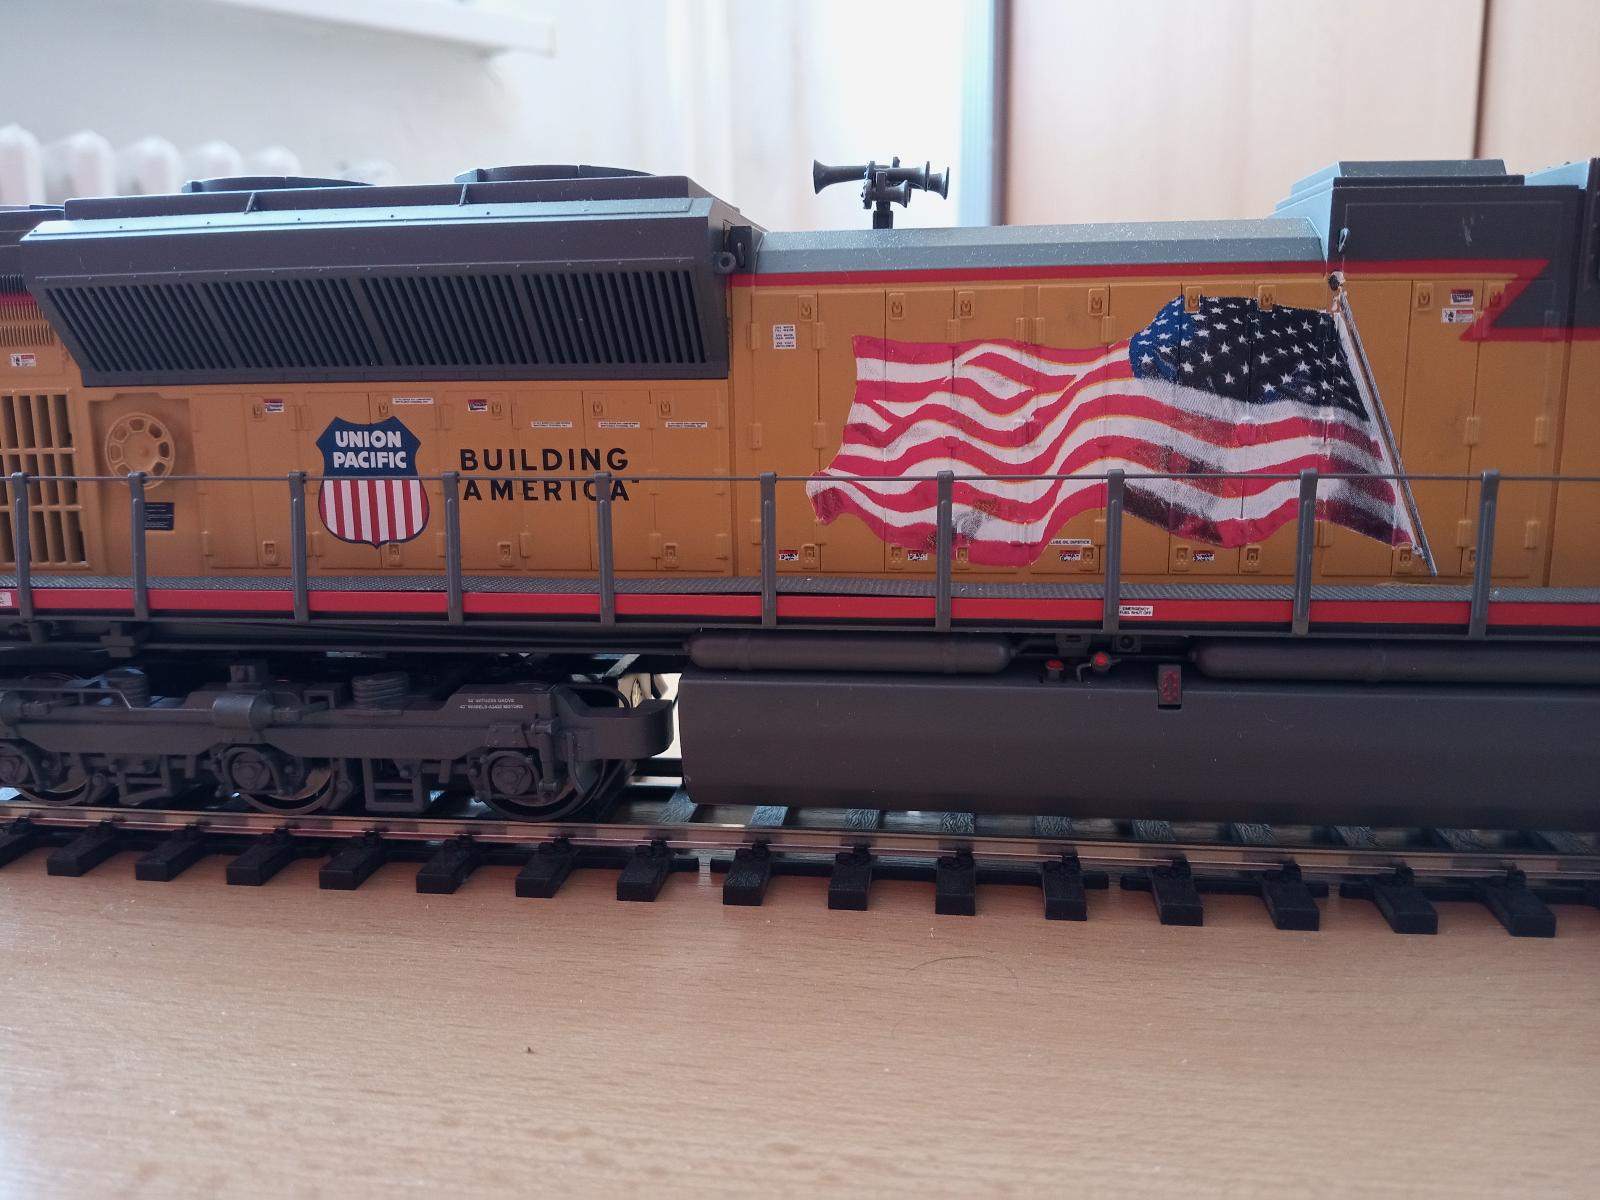 Mašina mth Union Pacific velikost 0  1:45 - Modelová železnice